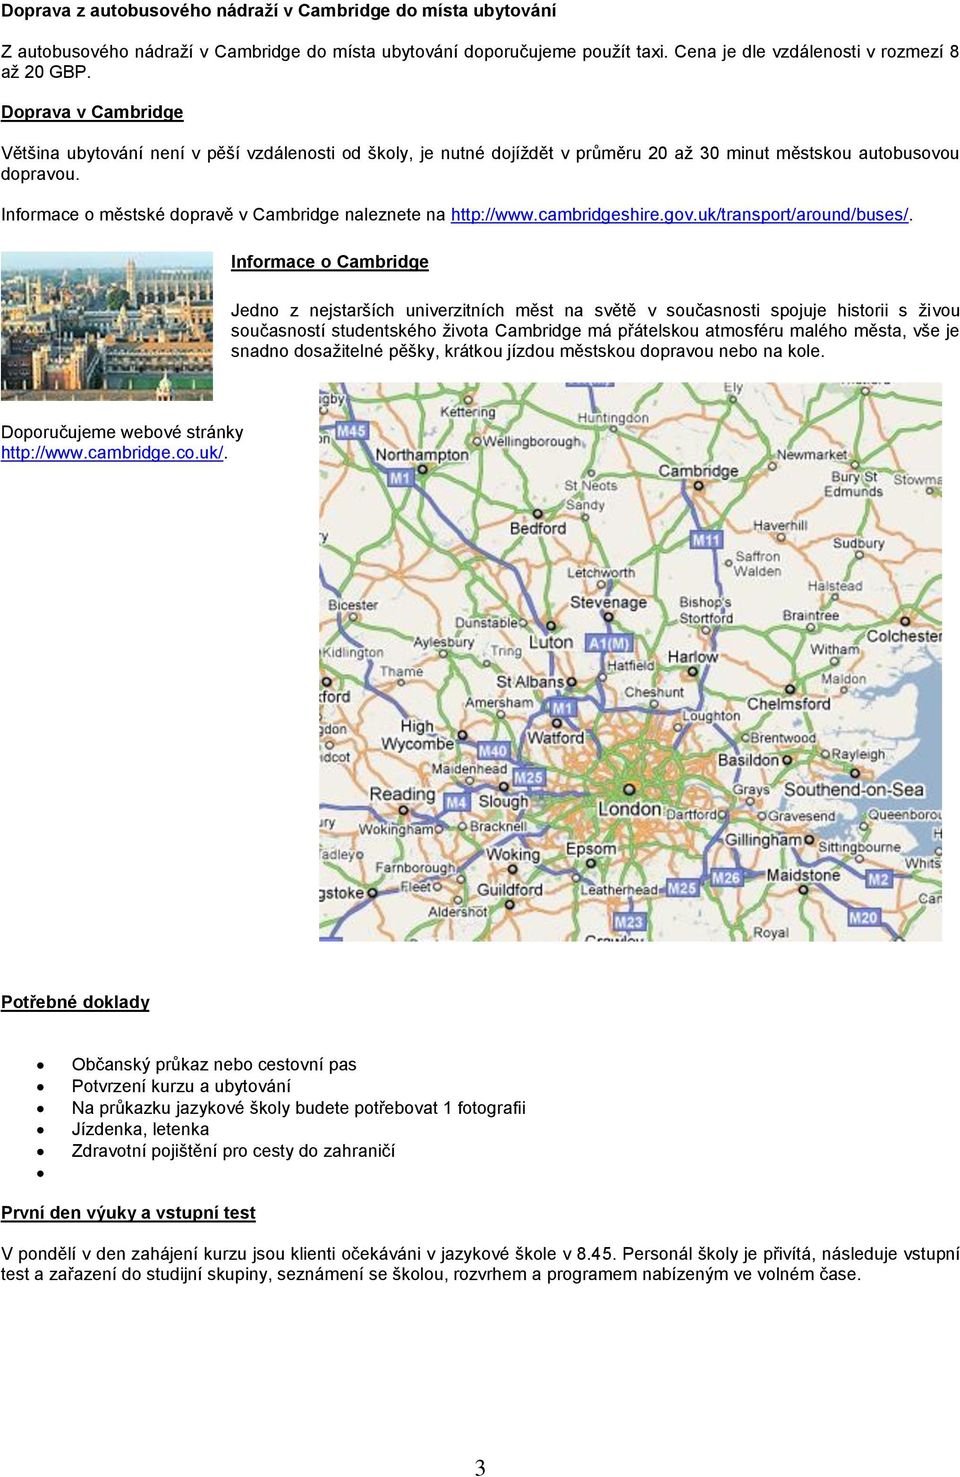 Informace o městské dopravě v Cambridge naleznete na http://www.cambridgeshire.gov.uk/transport/around/buses/.